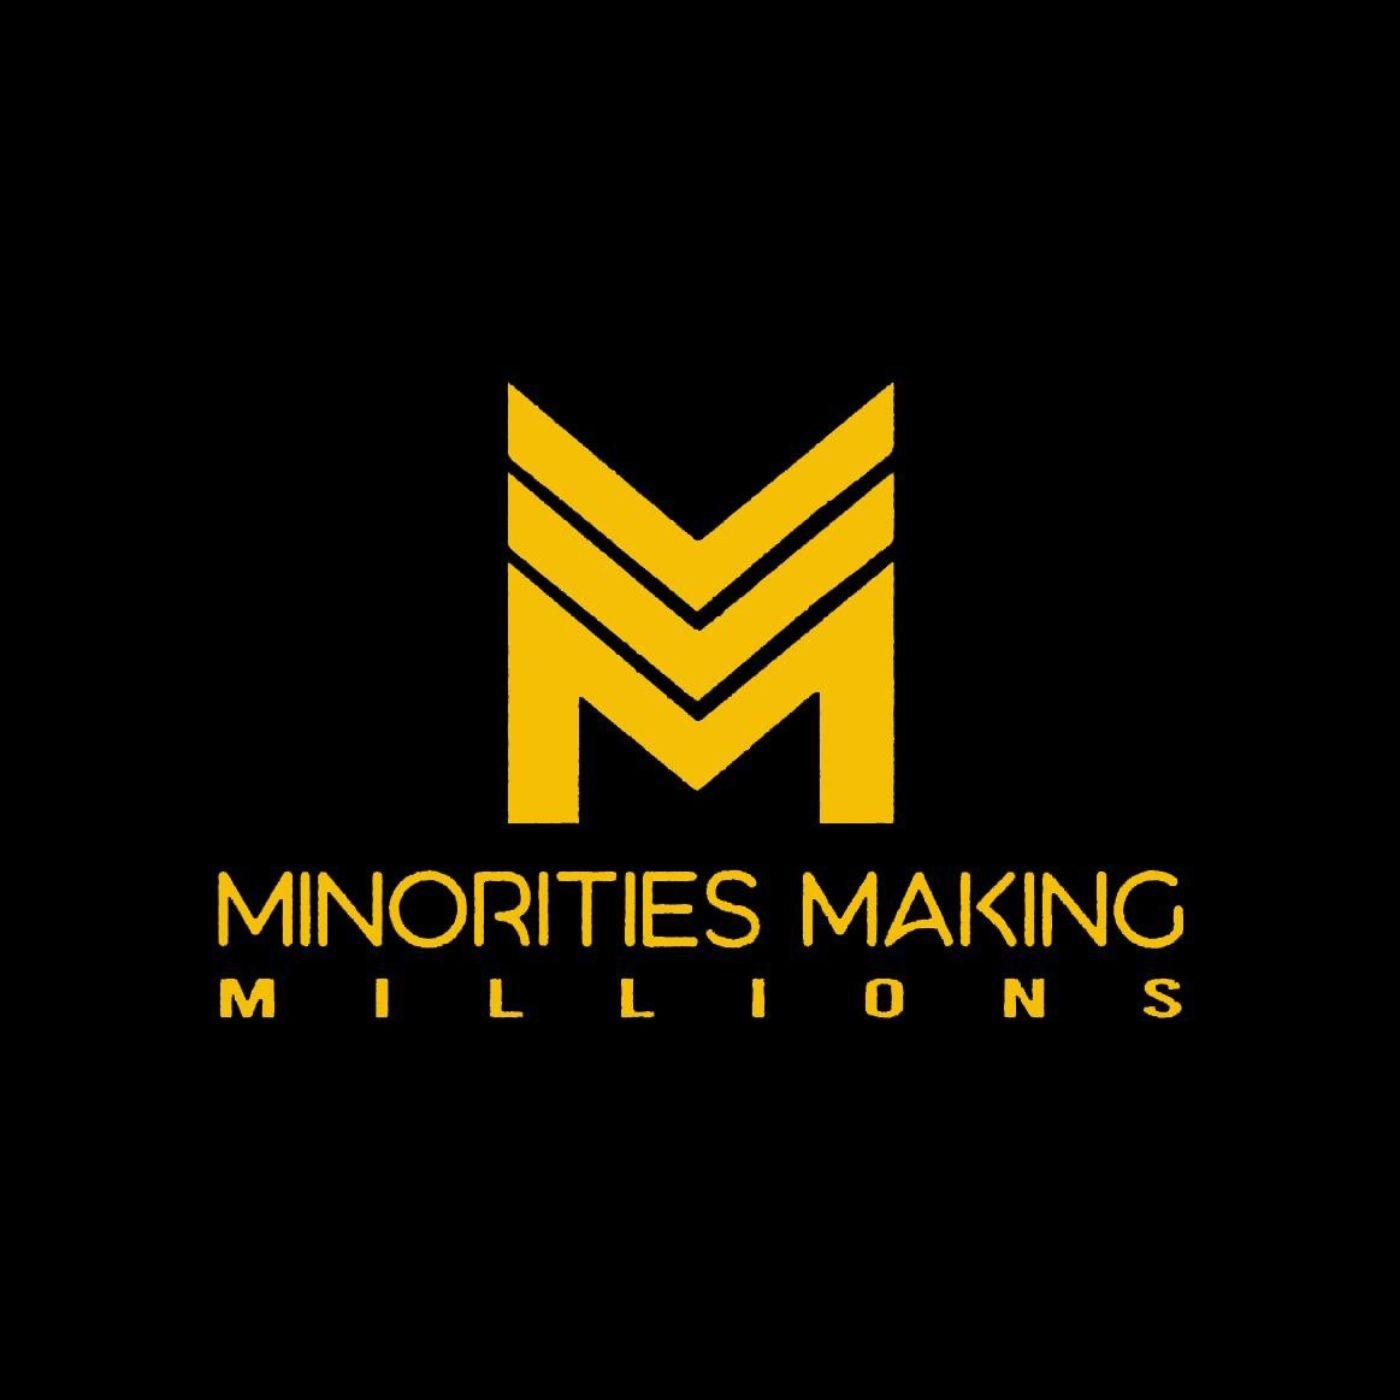 Minorities Making Millions